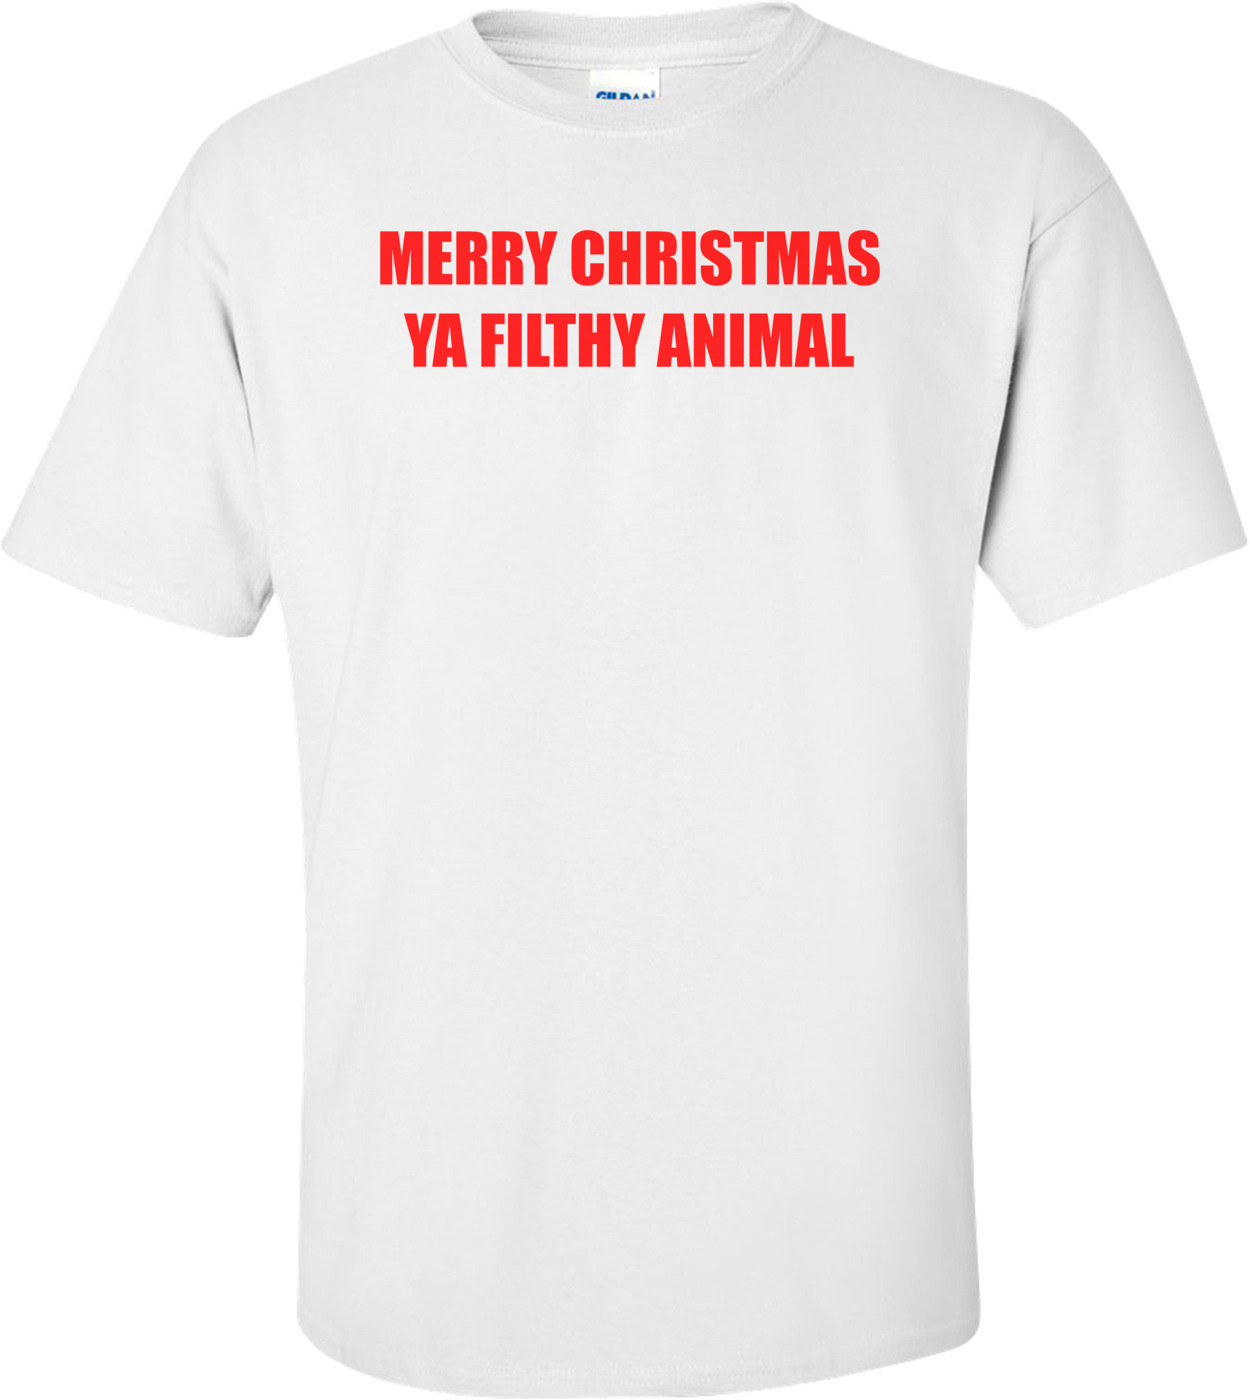 MERRY CHRISTMAS YA FILTHY ANIMAL Shirt